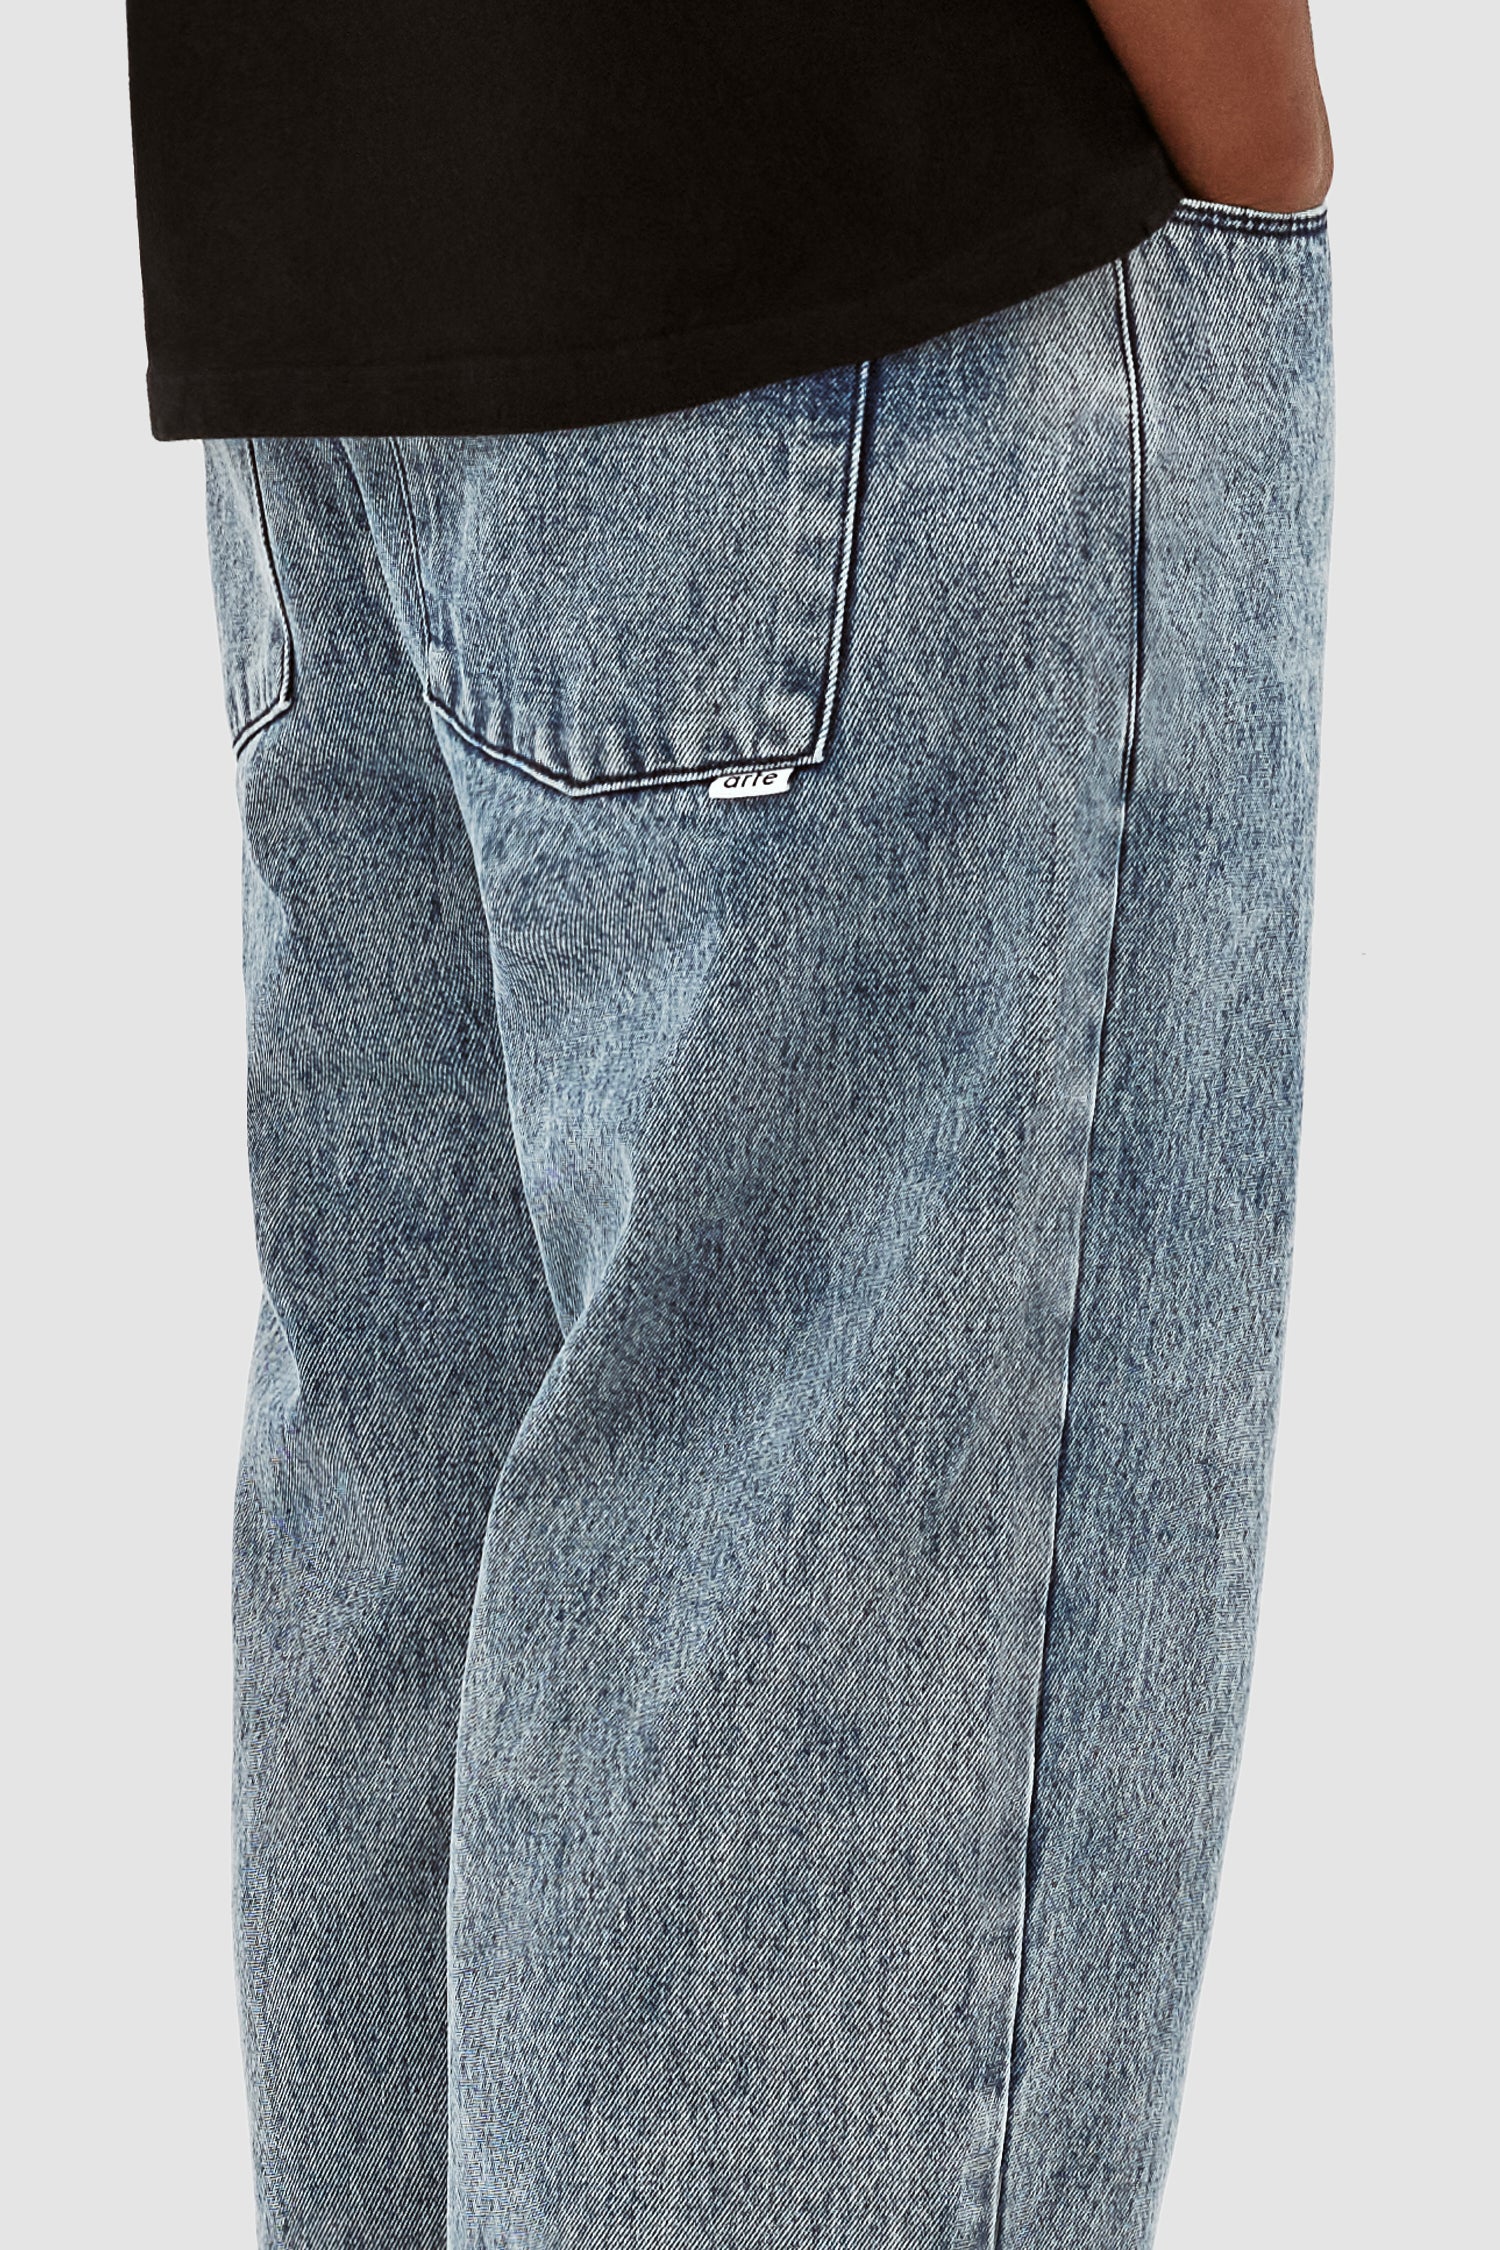 Poage Pantalon avec ceinture - Denim Vintage